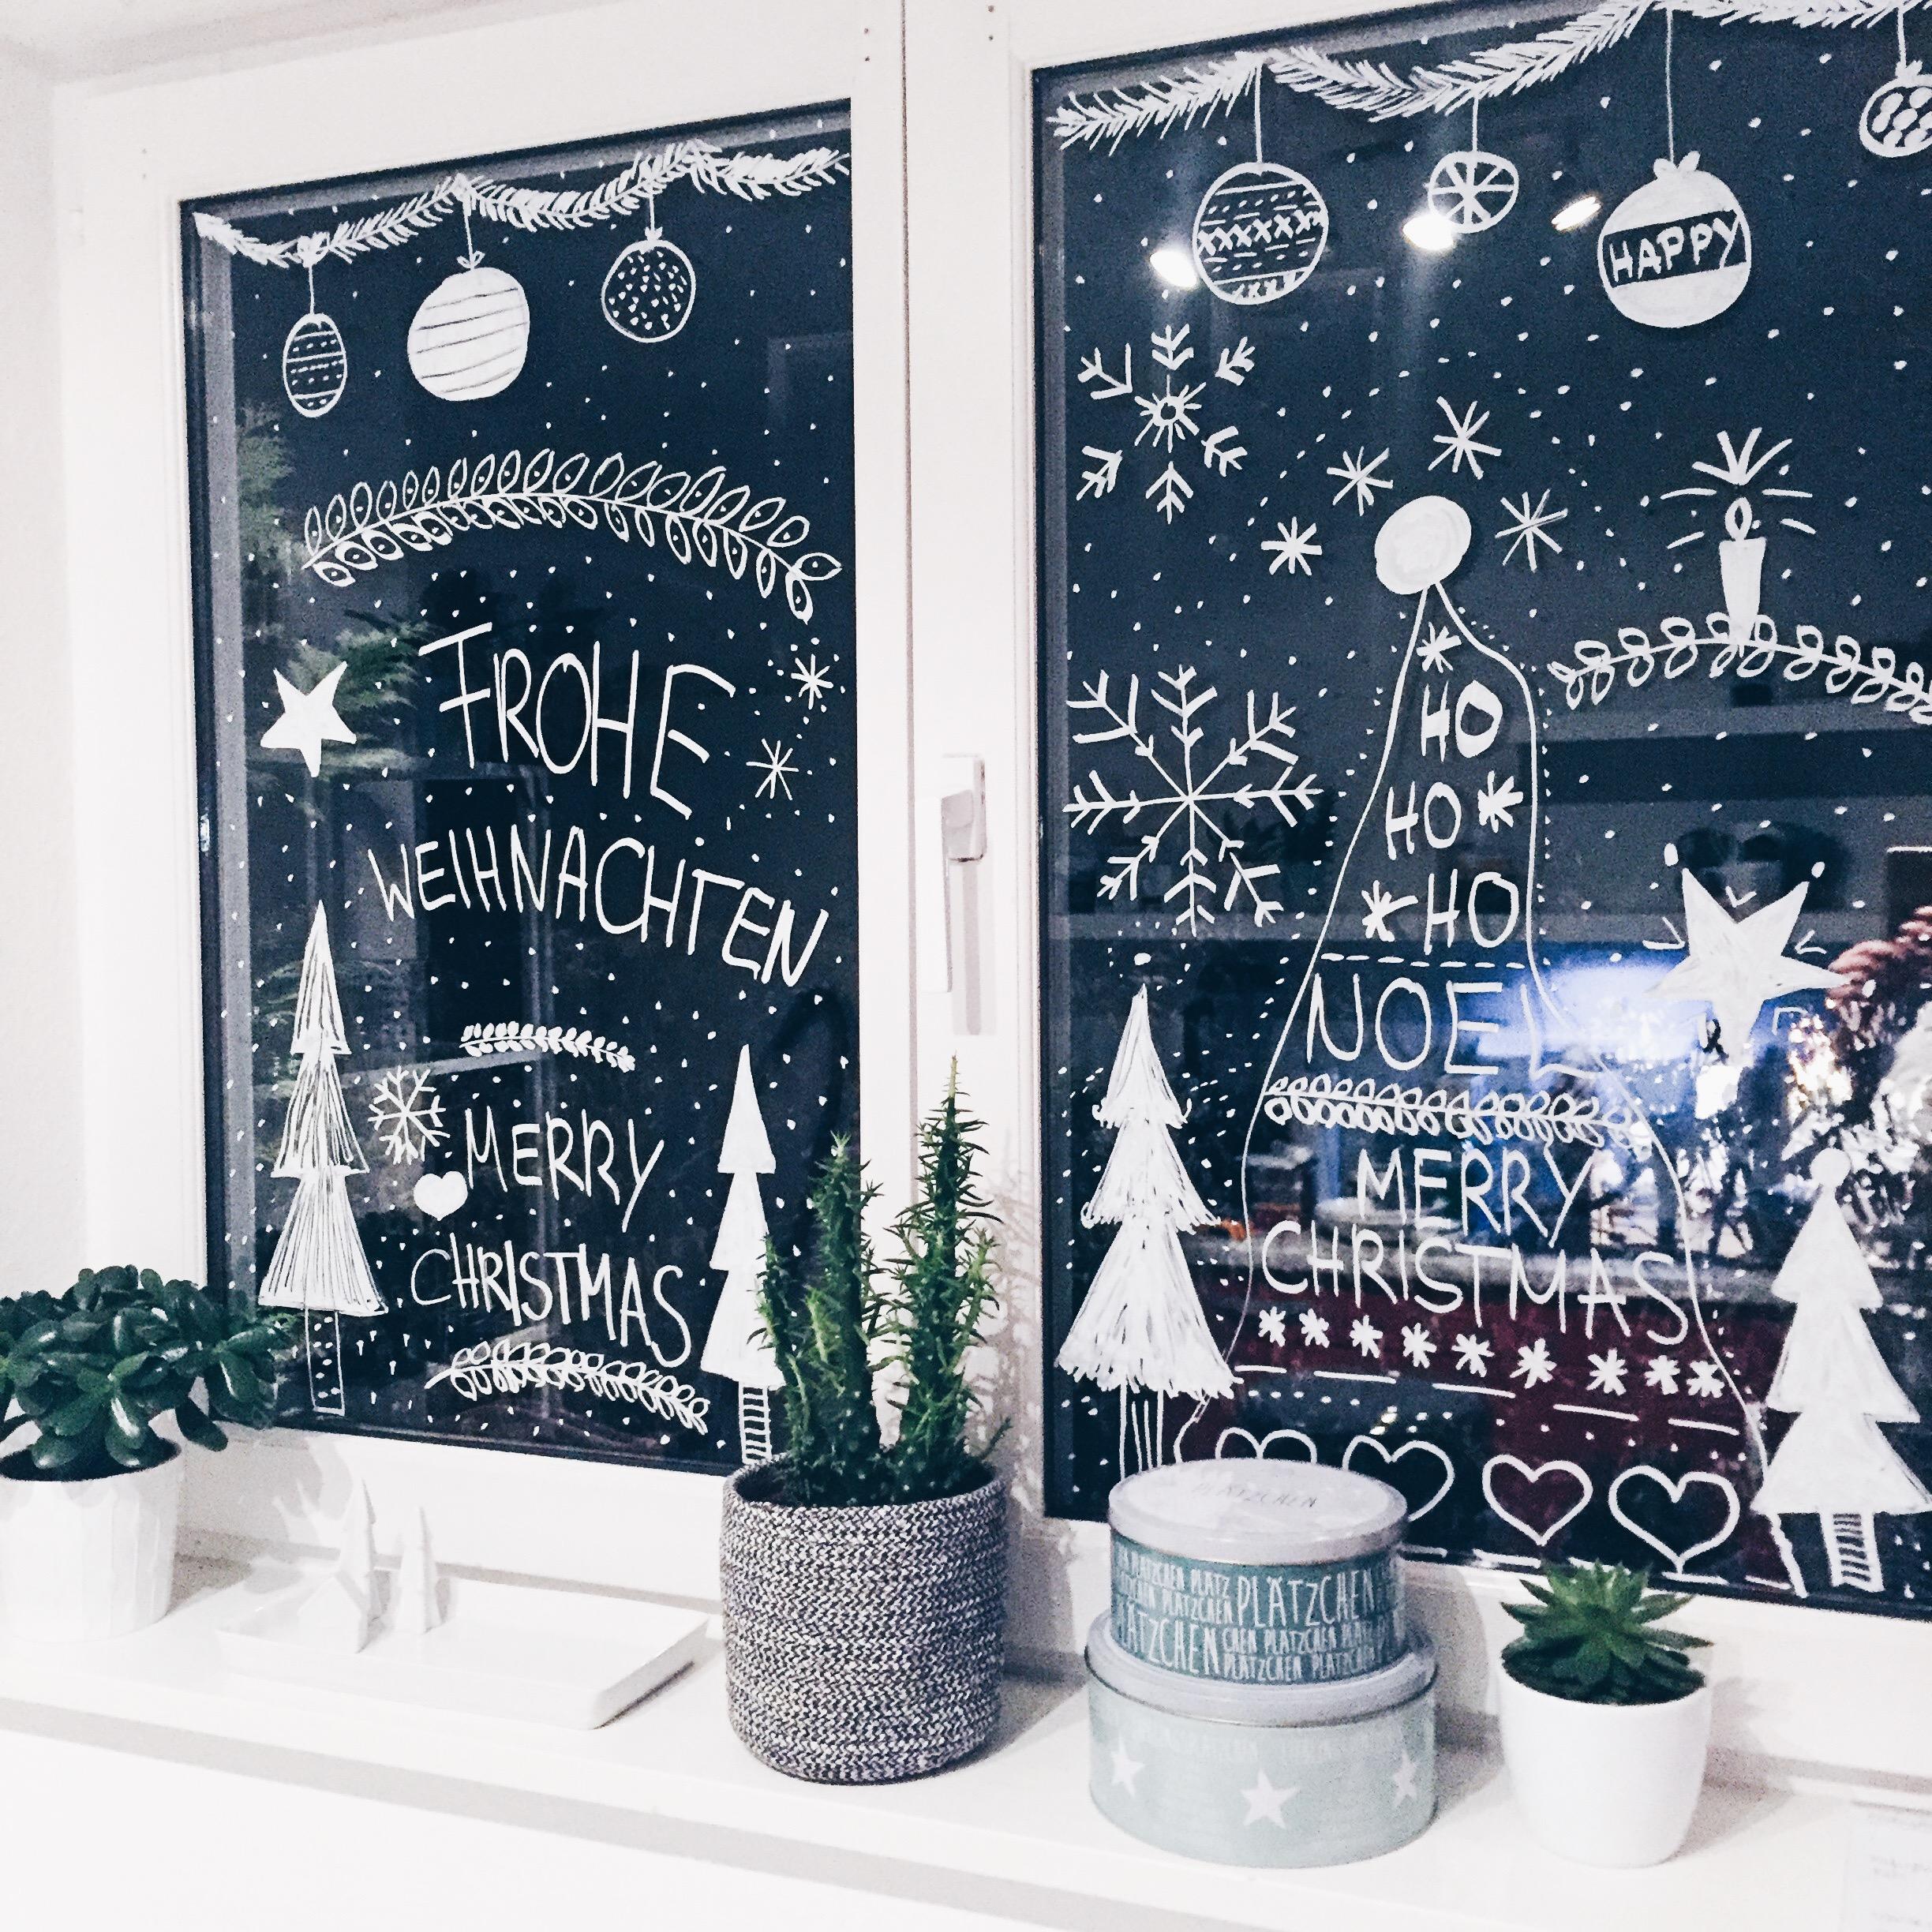 Weihnachtsfenstermalerei mit Kreidestift 
#fenstermalerei #weihnachten #diy